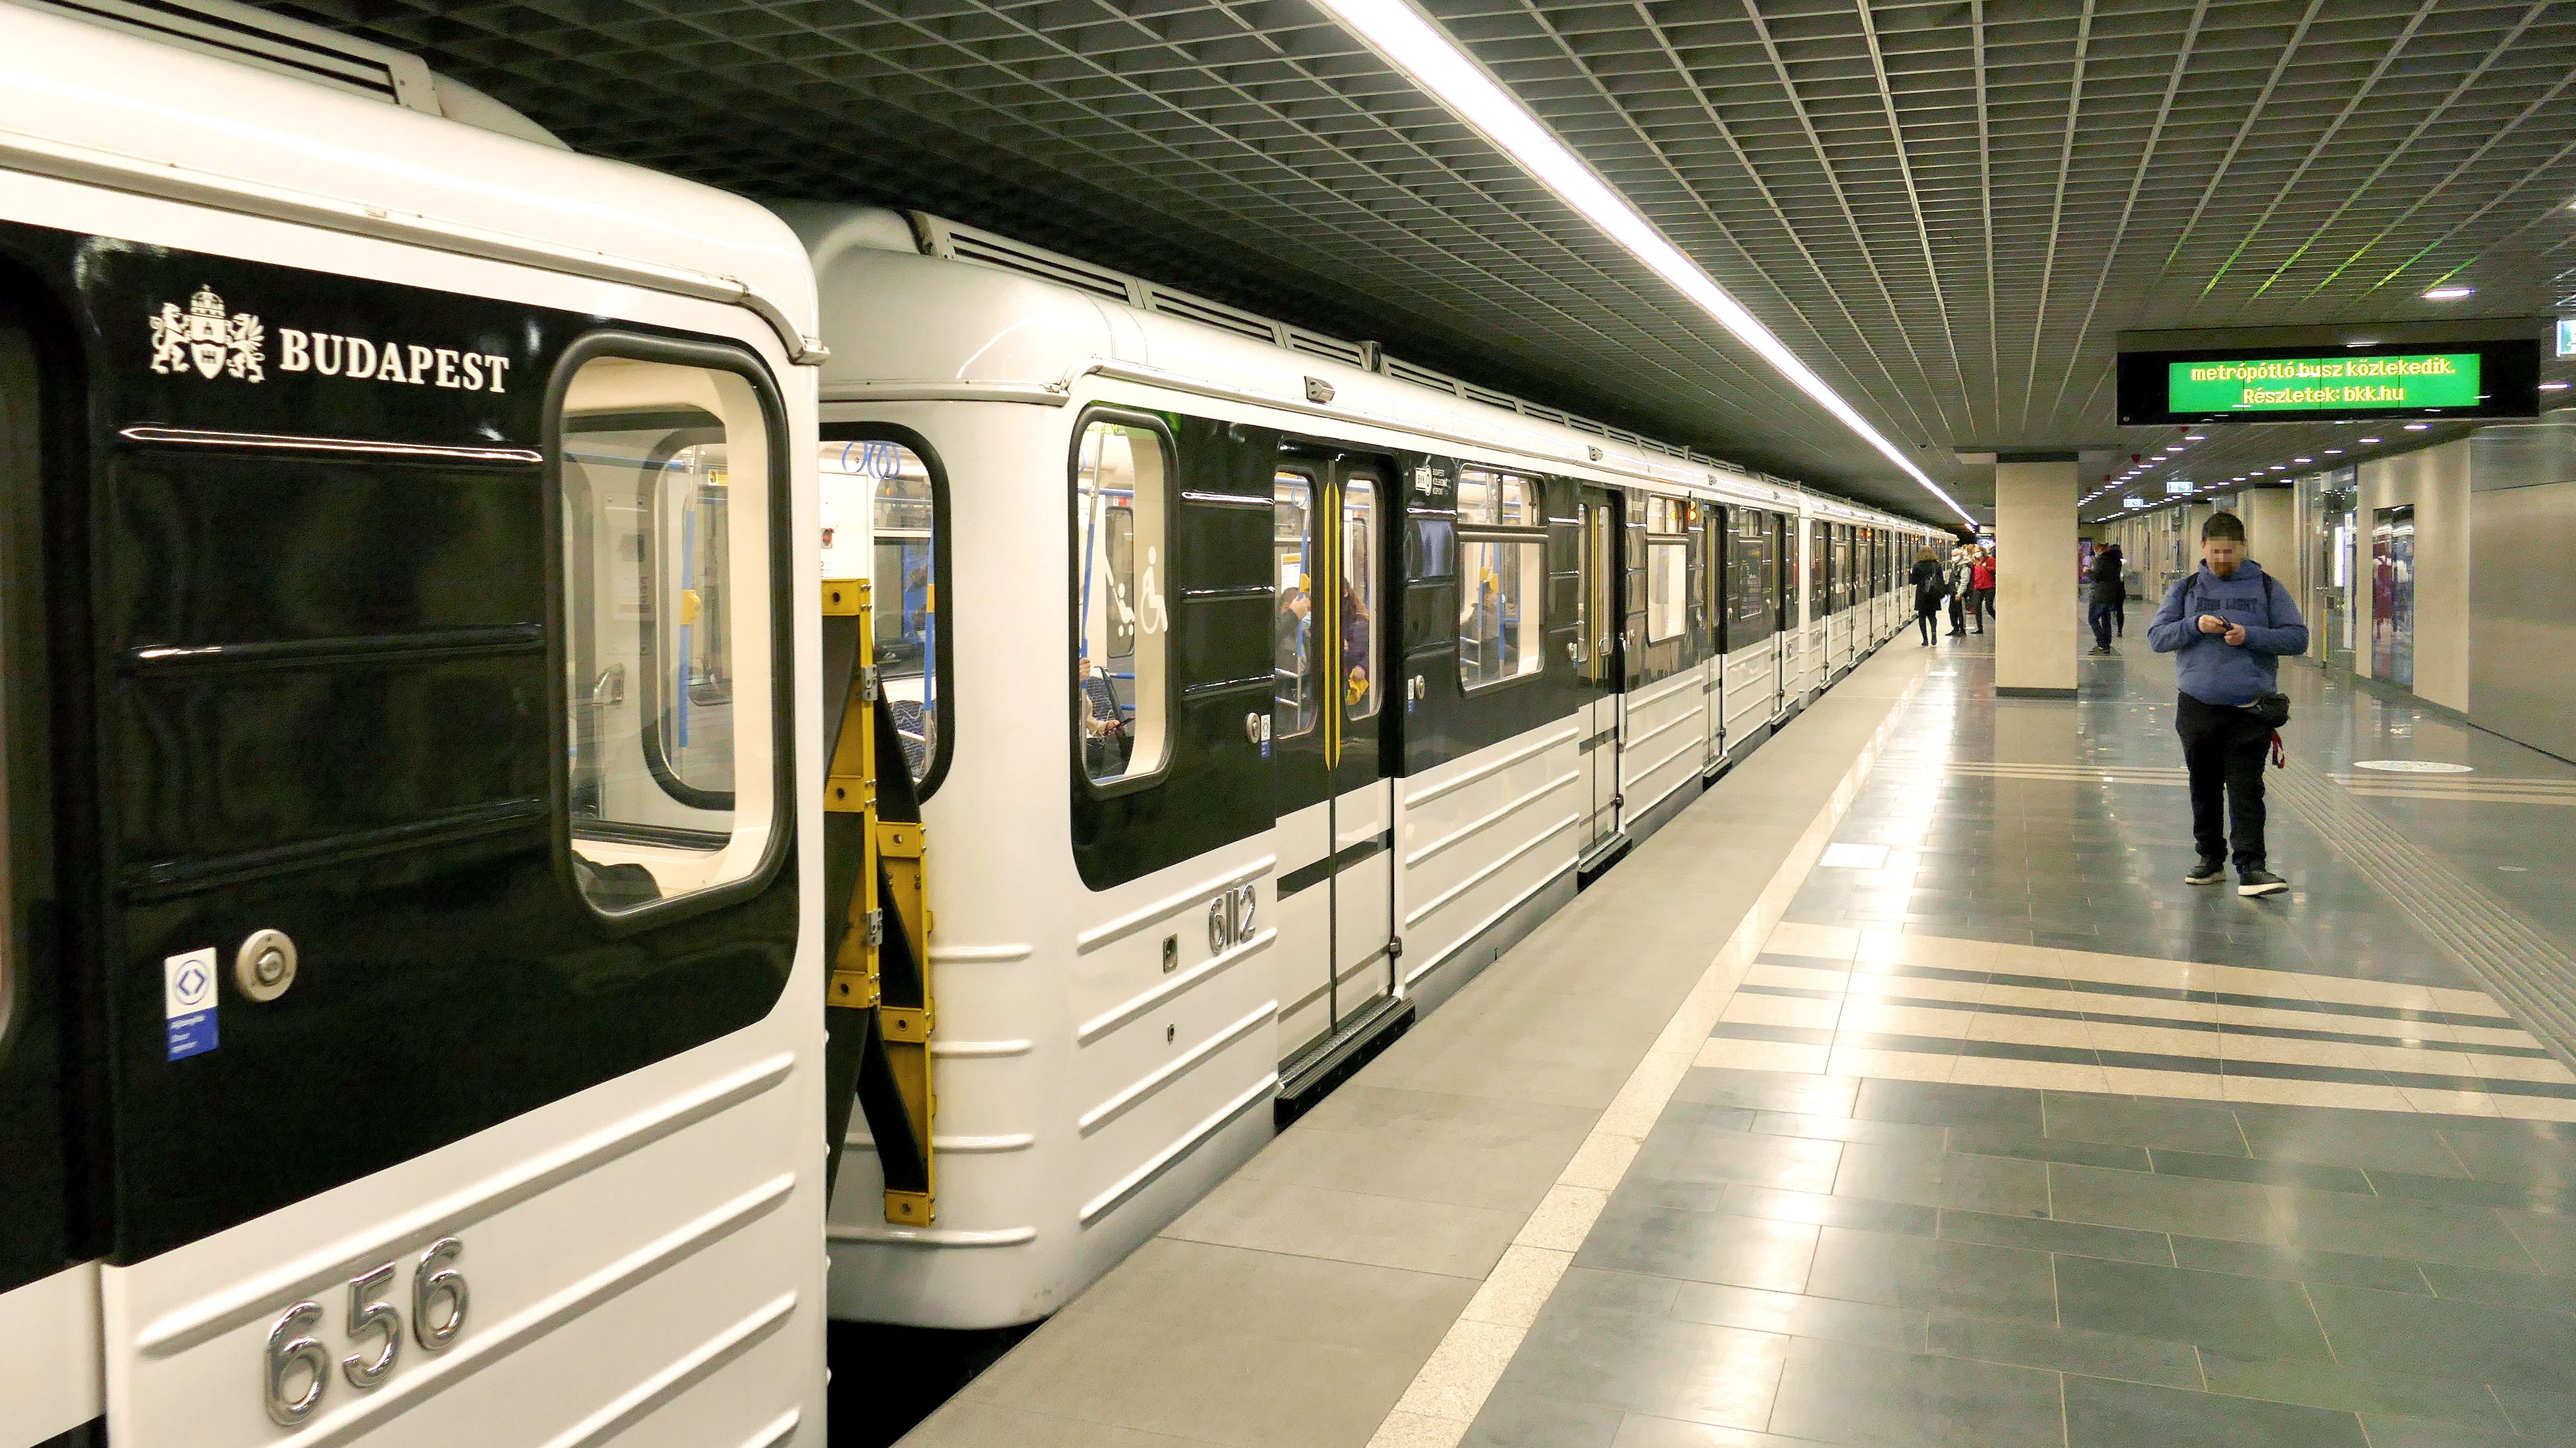 Az M3-as metró vonalán közlekedő egyik orosz gyártmányú szerelvény megérkezik a Göncz Árpád térnél lévő megállójába, a már felújított északi pályaszakaszon. A fővárosi M3-as metróvonal rekonstrukciója 2017. november 6-án kezdődött és a tervek szerint 2023 tavaszán veheti újra igénybe az utazóközönség a megújult teljes vonalat. (Fotó: MTVA/Bizományosi: Jászai Csaba)